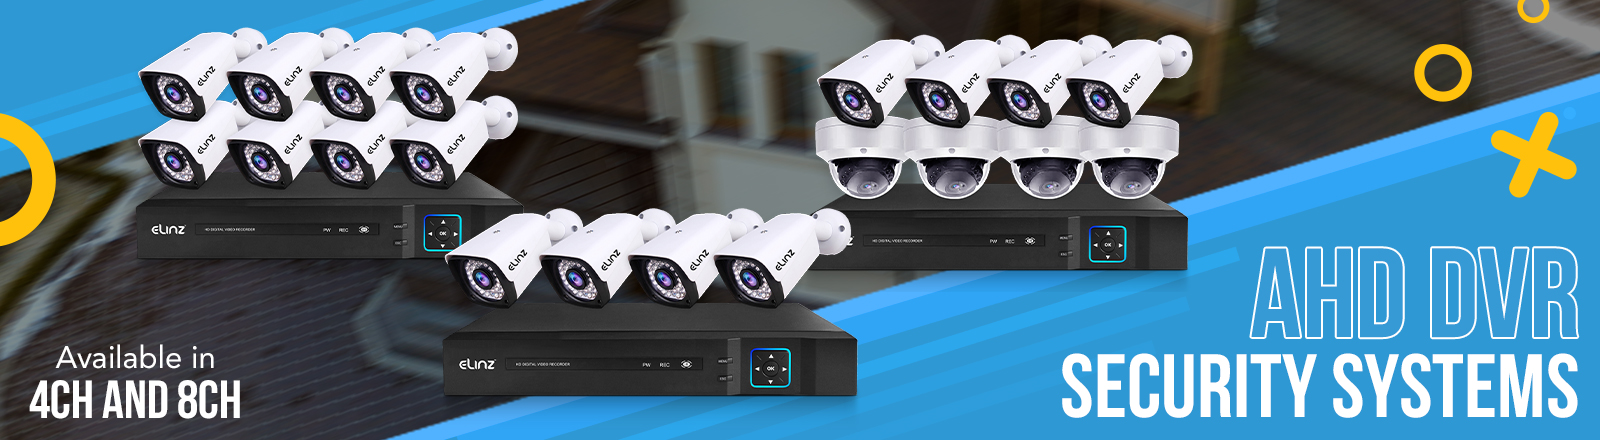 AHD DVR Security Cameras